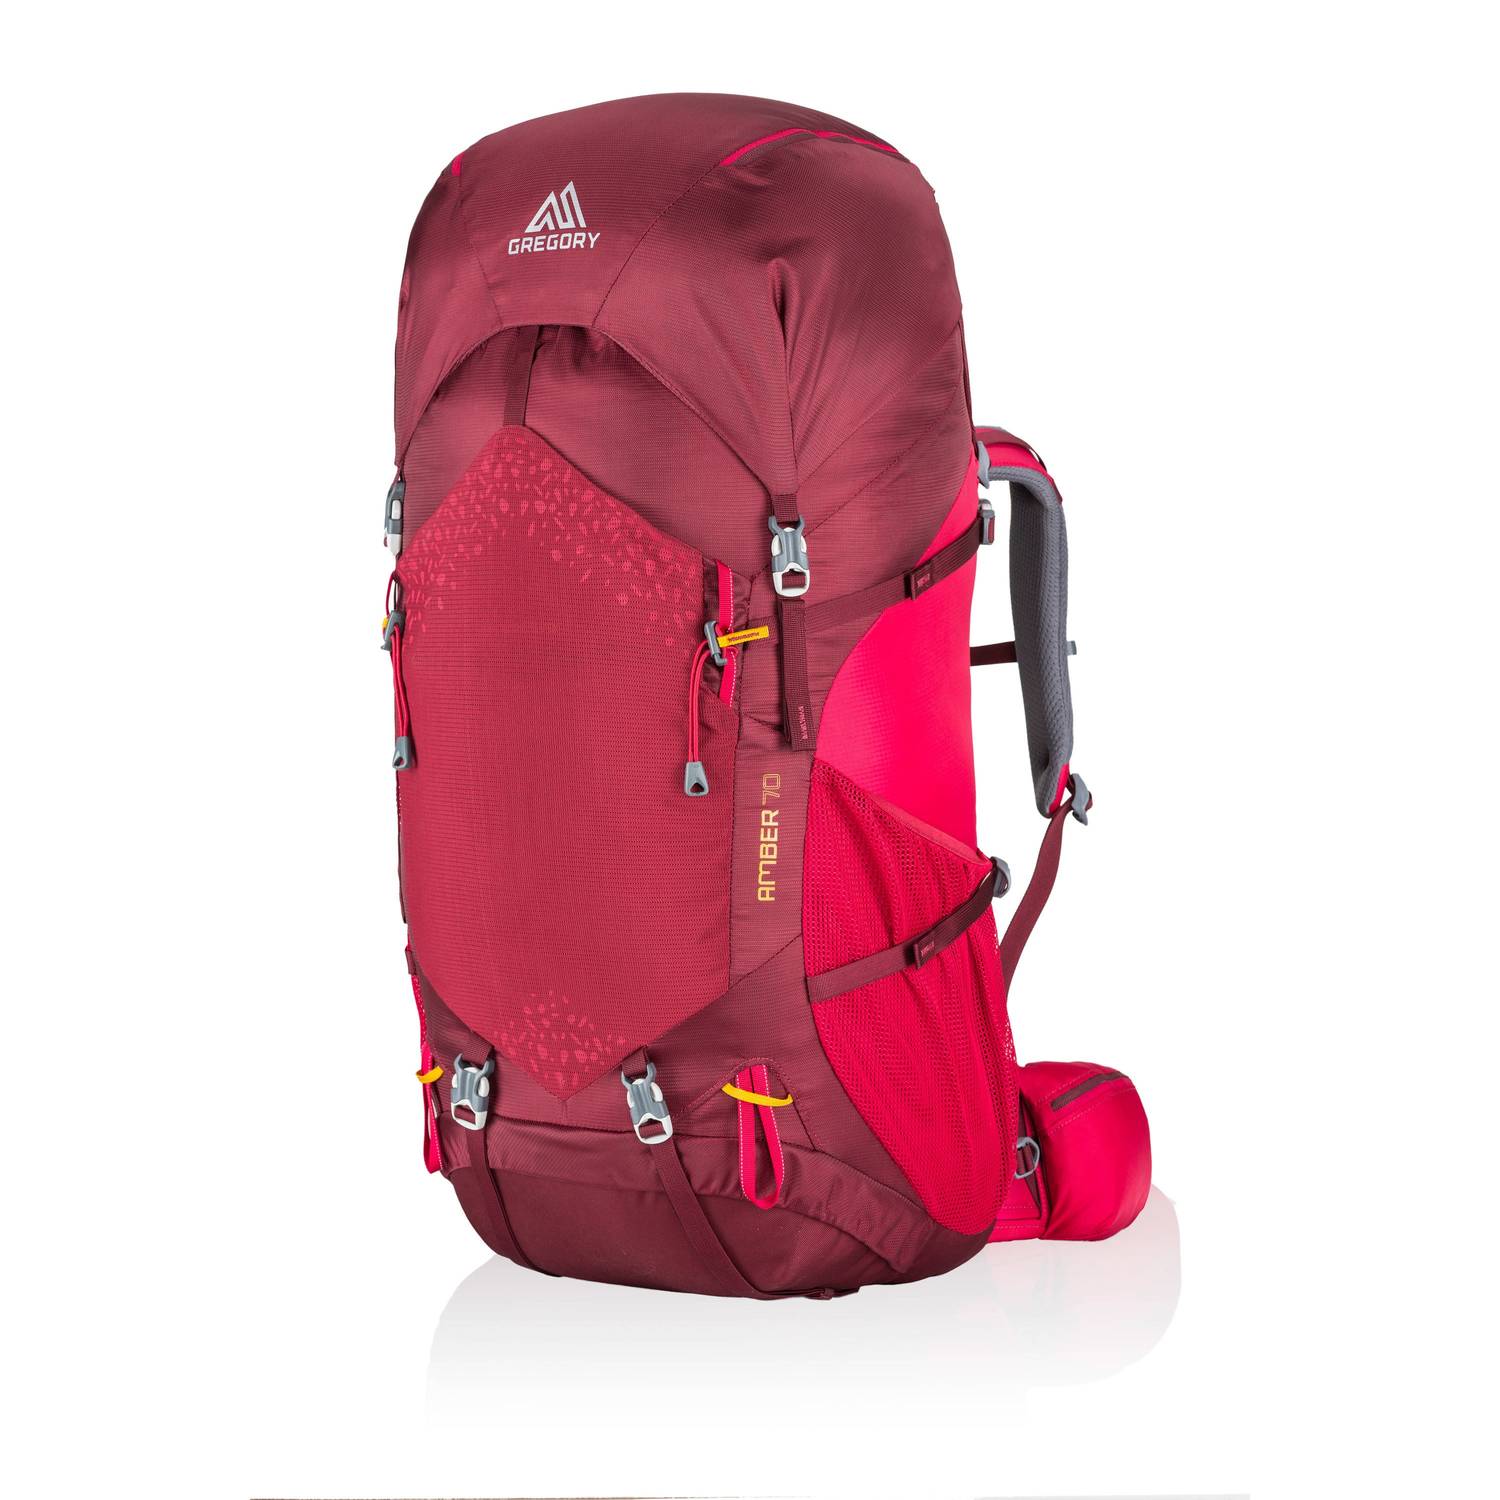 vervoer alledaags Kwadrant Backpack Gregory Amber 70l Chili Pepper Red for sale online | eBay